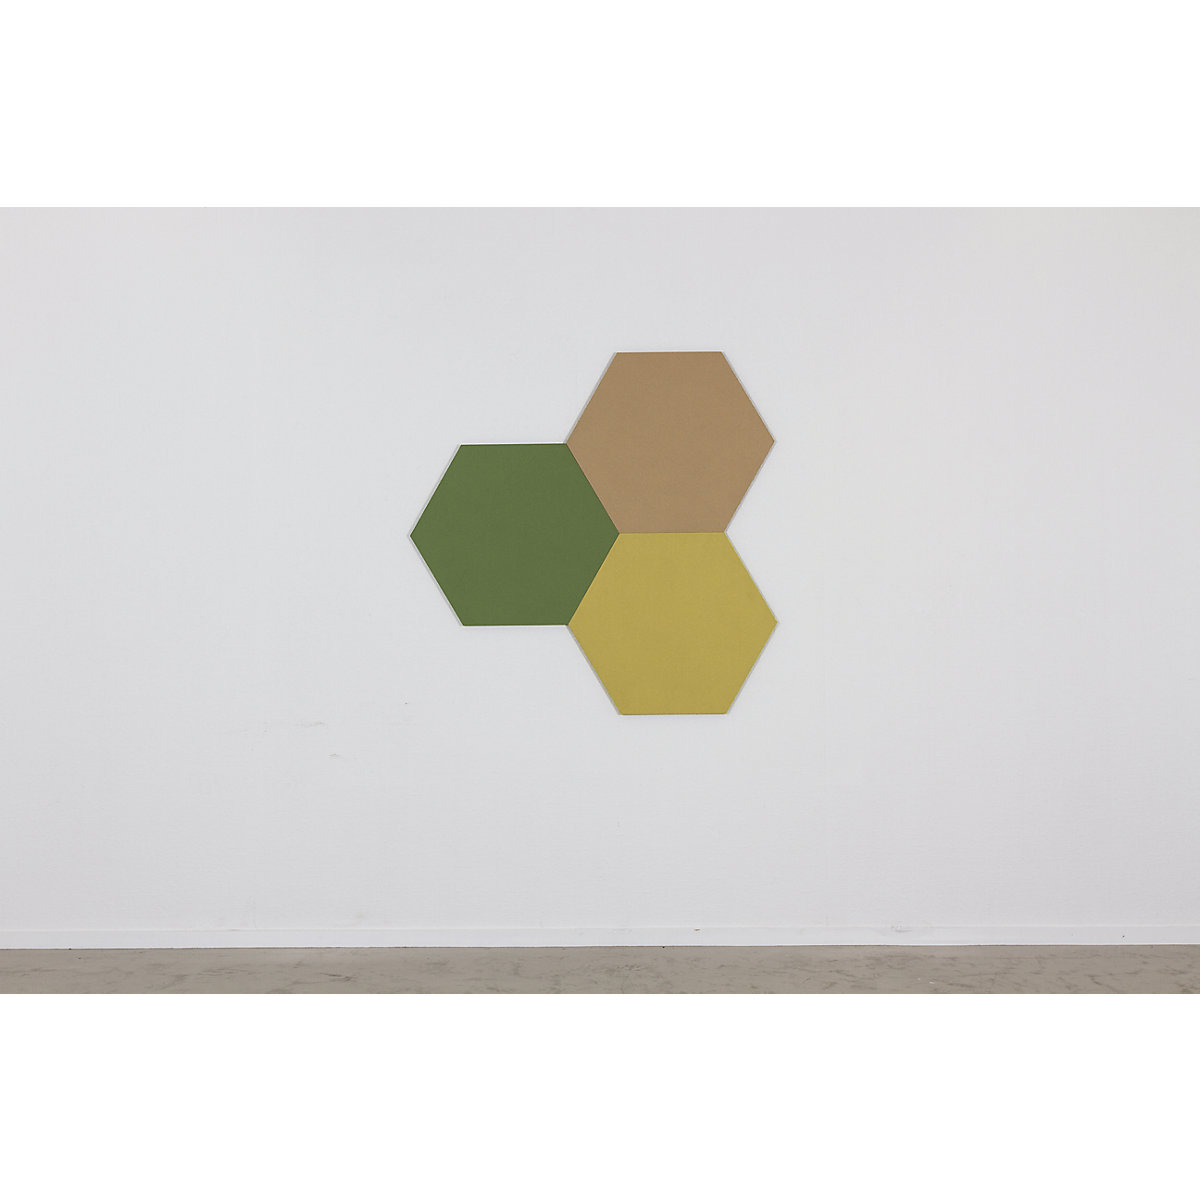 Tableau à épingles design hexagonal – Chameleon: liège